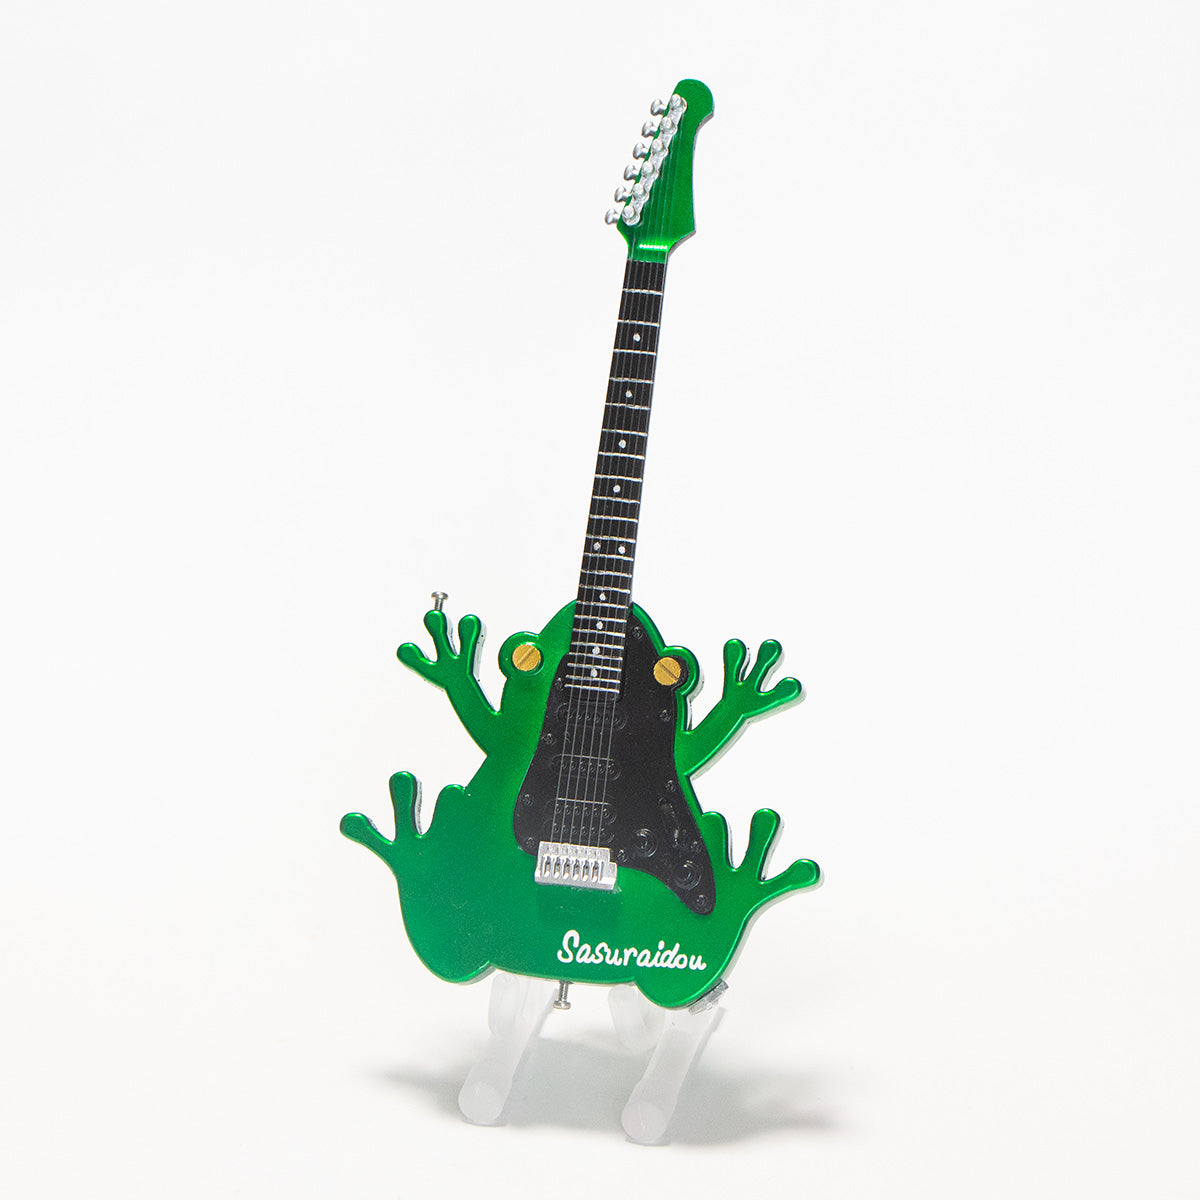 ロックでかっこいいカエル型エレキギター